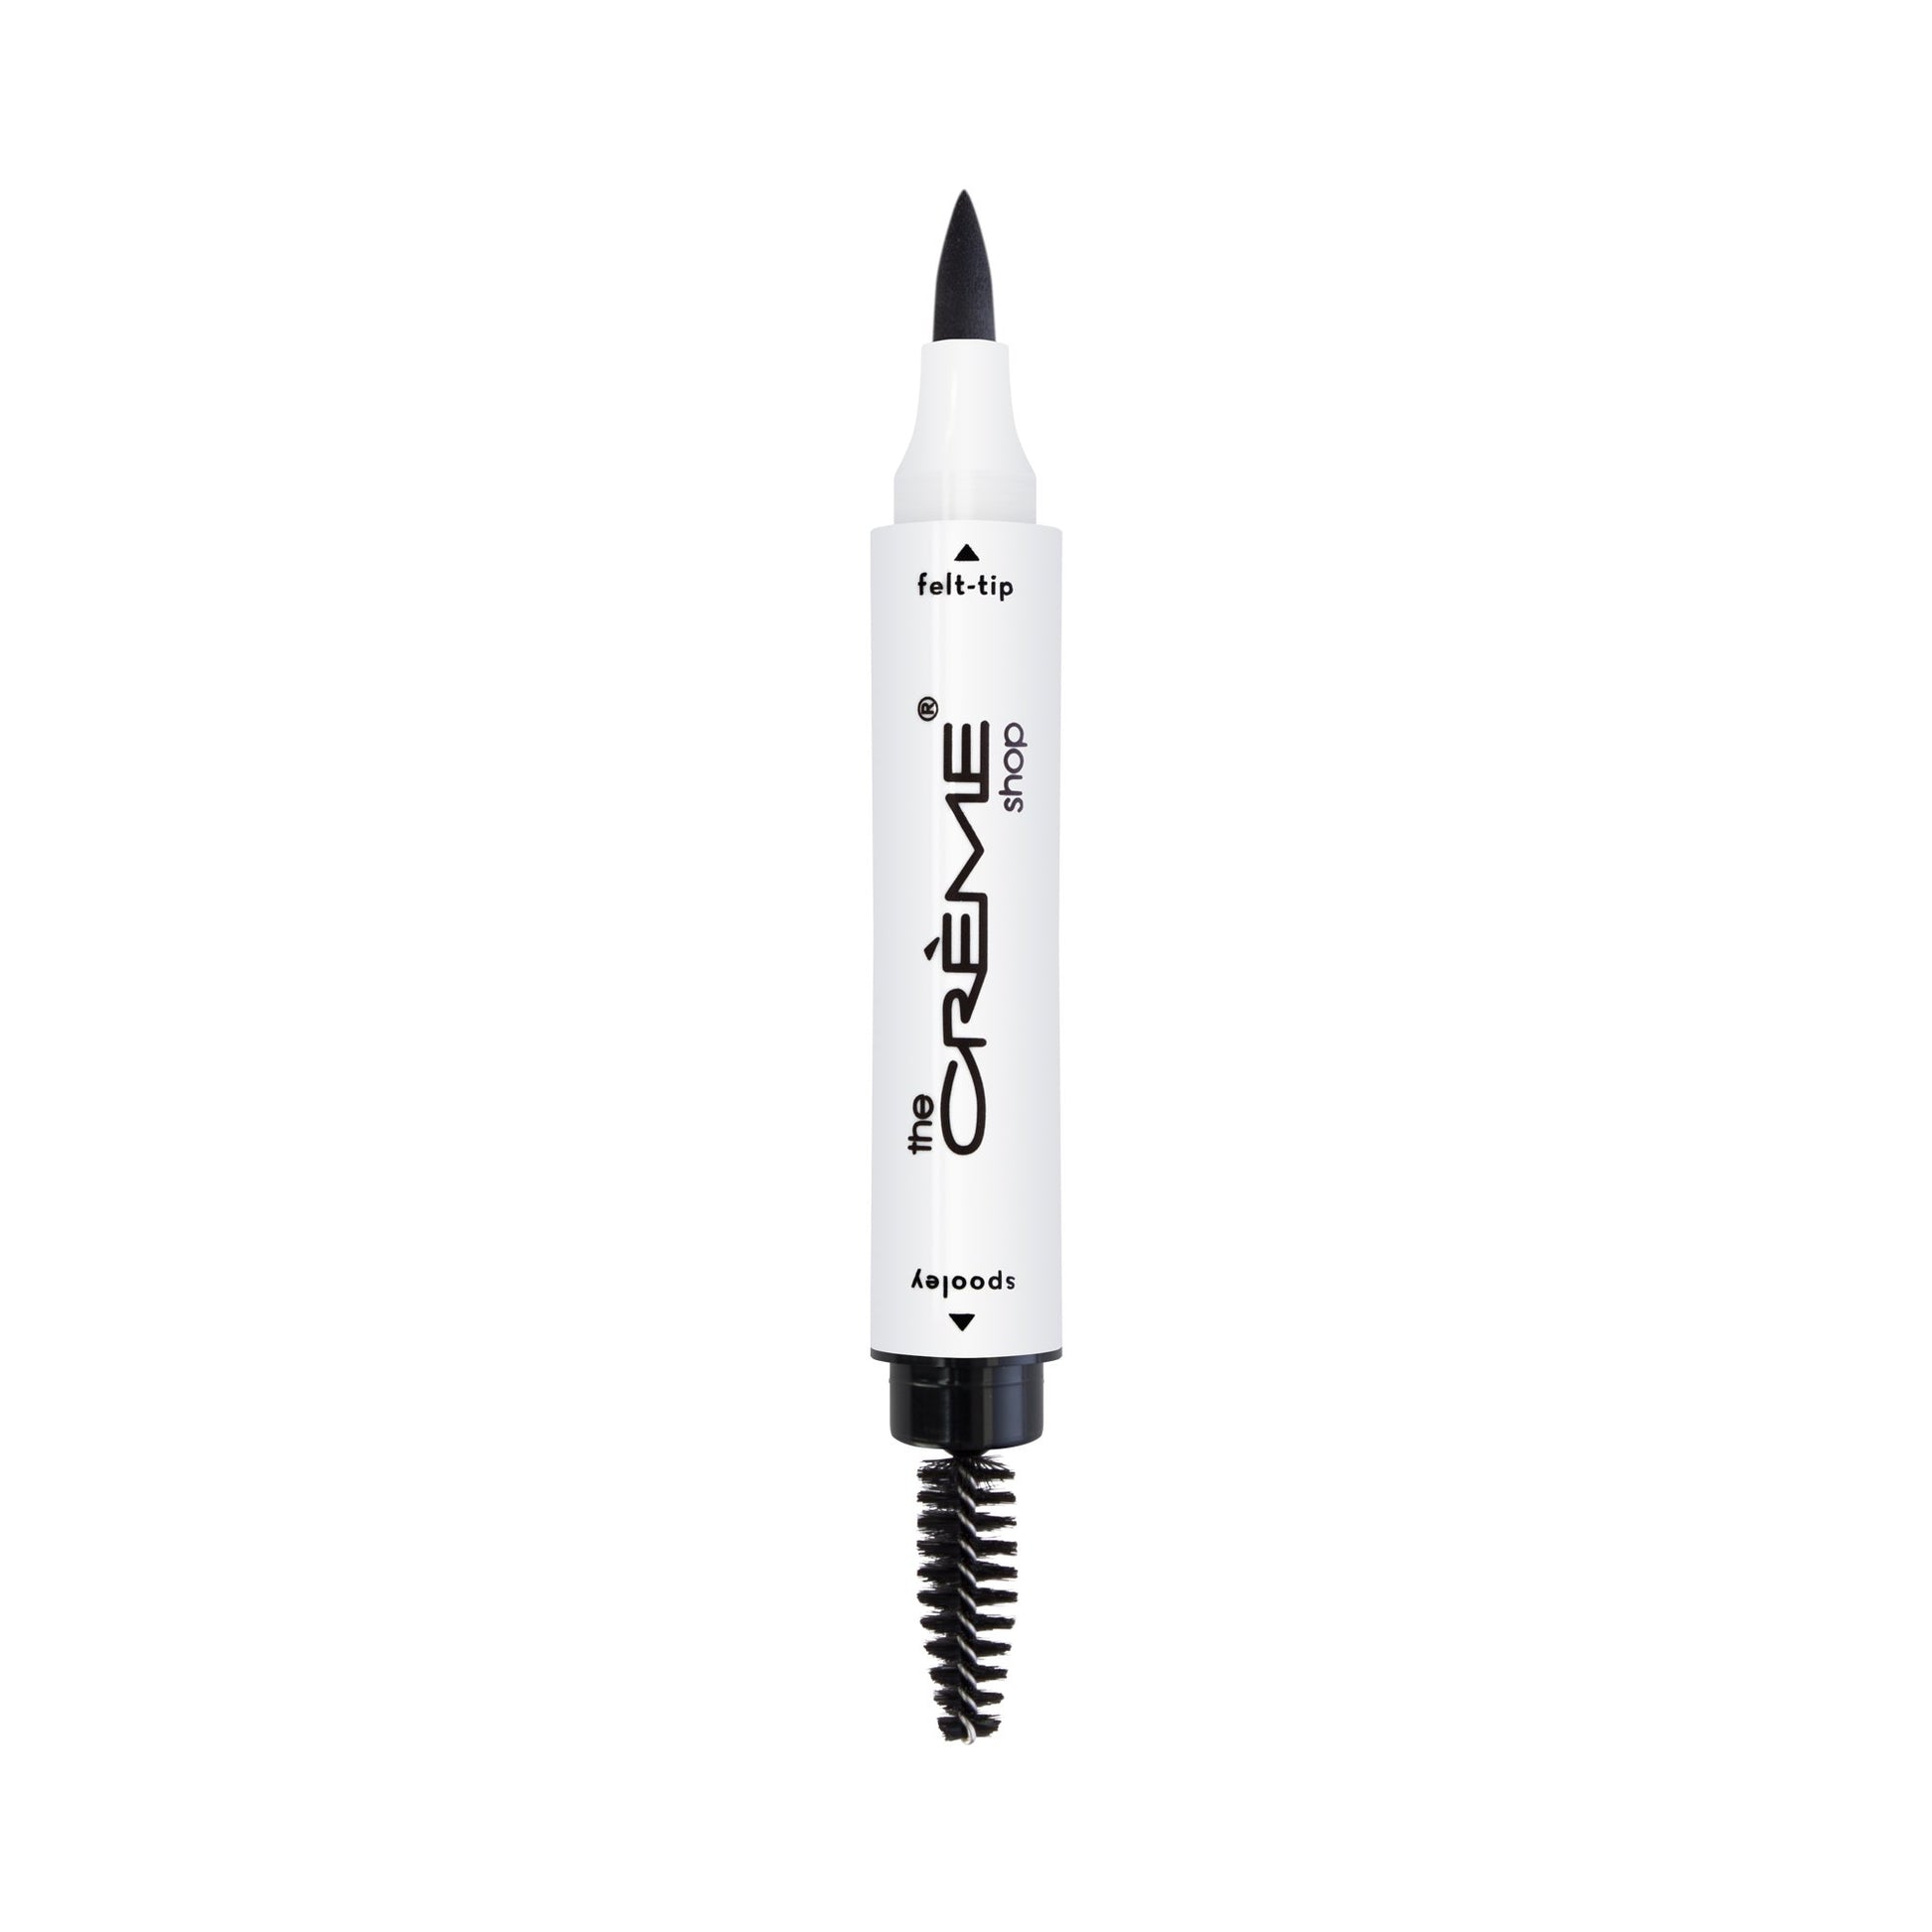 BIG Brow Marker | 2-In-1 Felt-Tip Brow Pen & Spooley Brow Pen The Crème Shop 